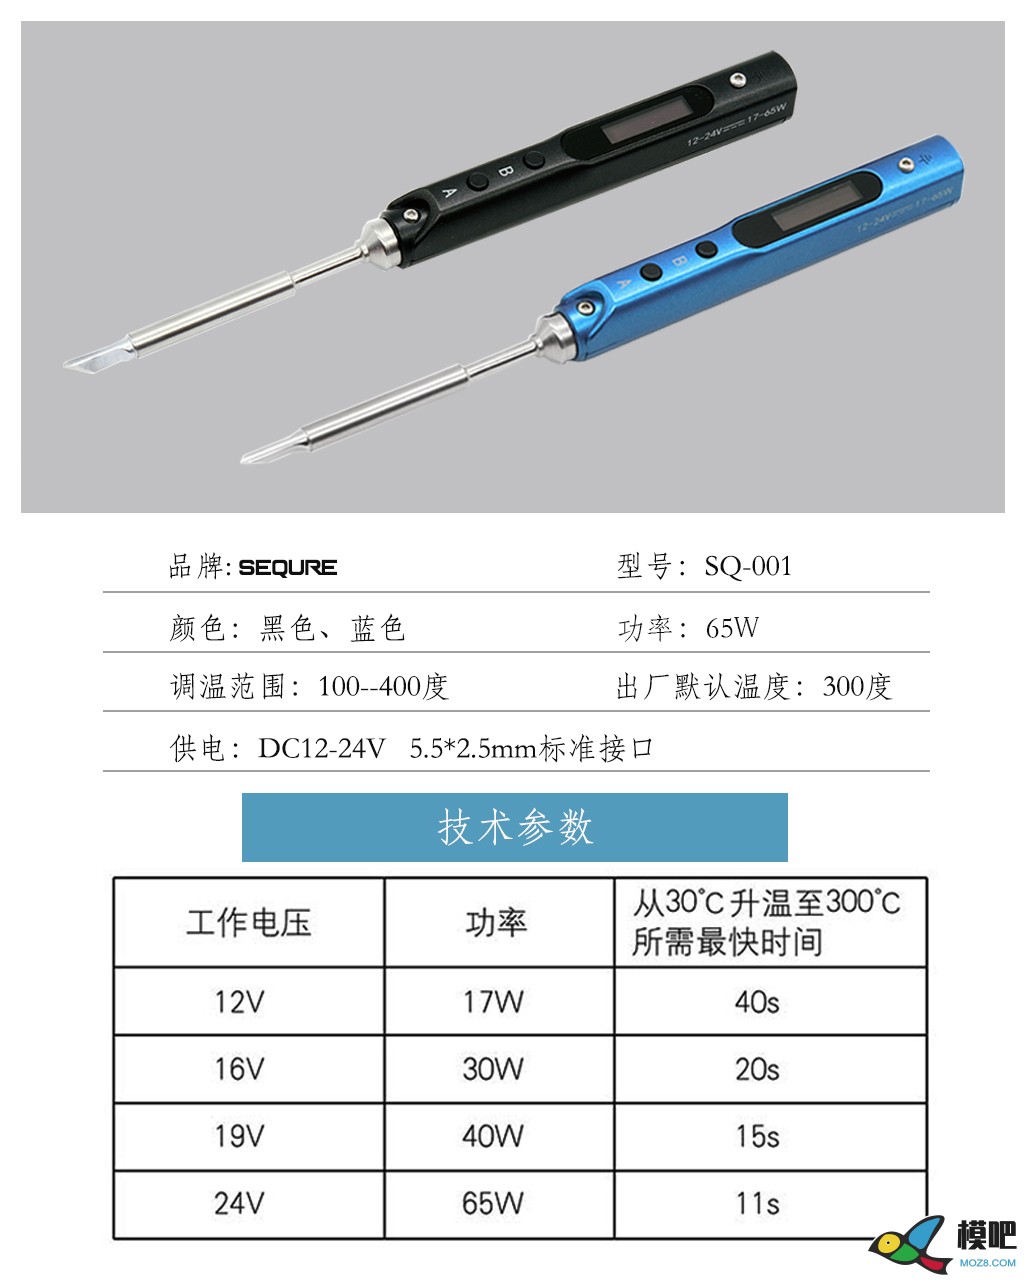 大量出售电烙铁！！航模爱好者的随身工具 taobao,温度传感器,stm32,电路设计,爱好者 作者:funky 9609 